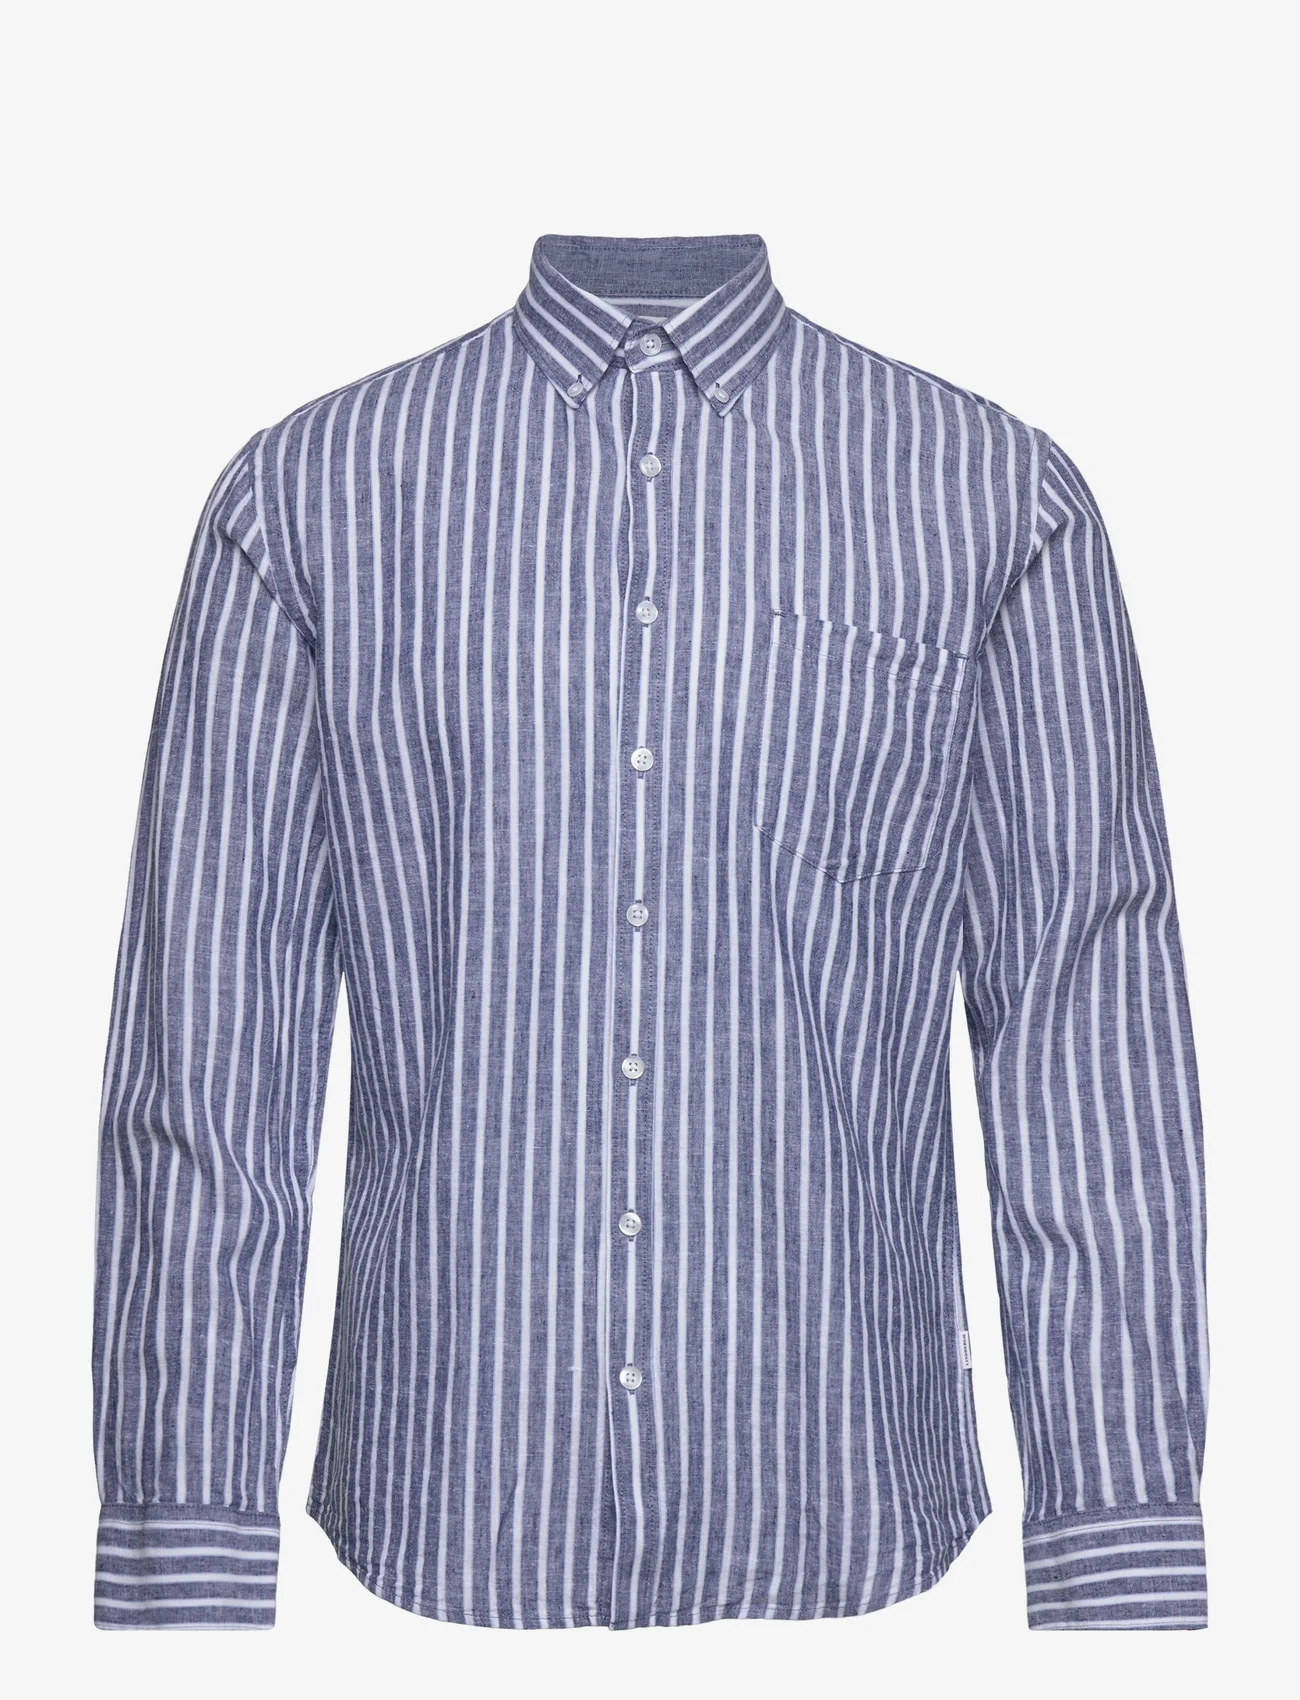 Lindbergh - Striped cotton/linen shirt L/S - linskjorter - navy - 0